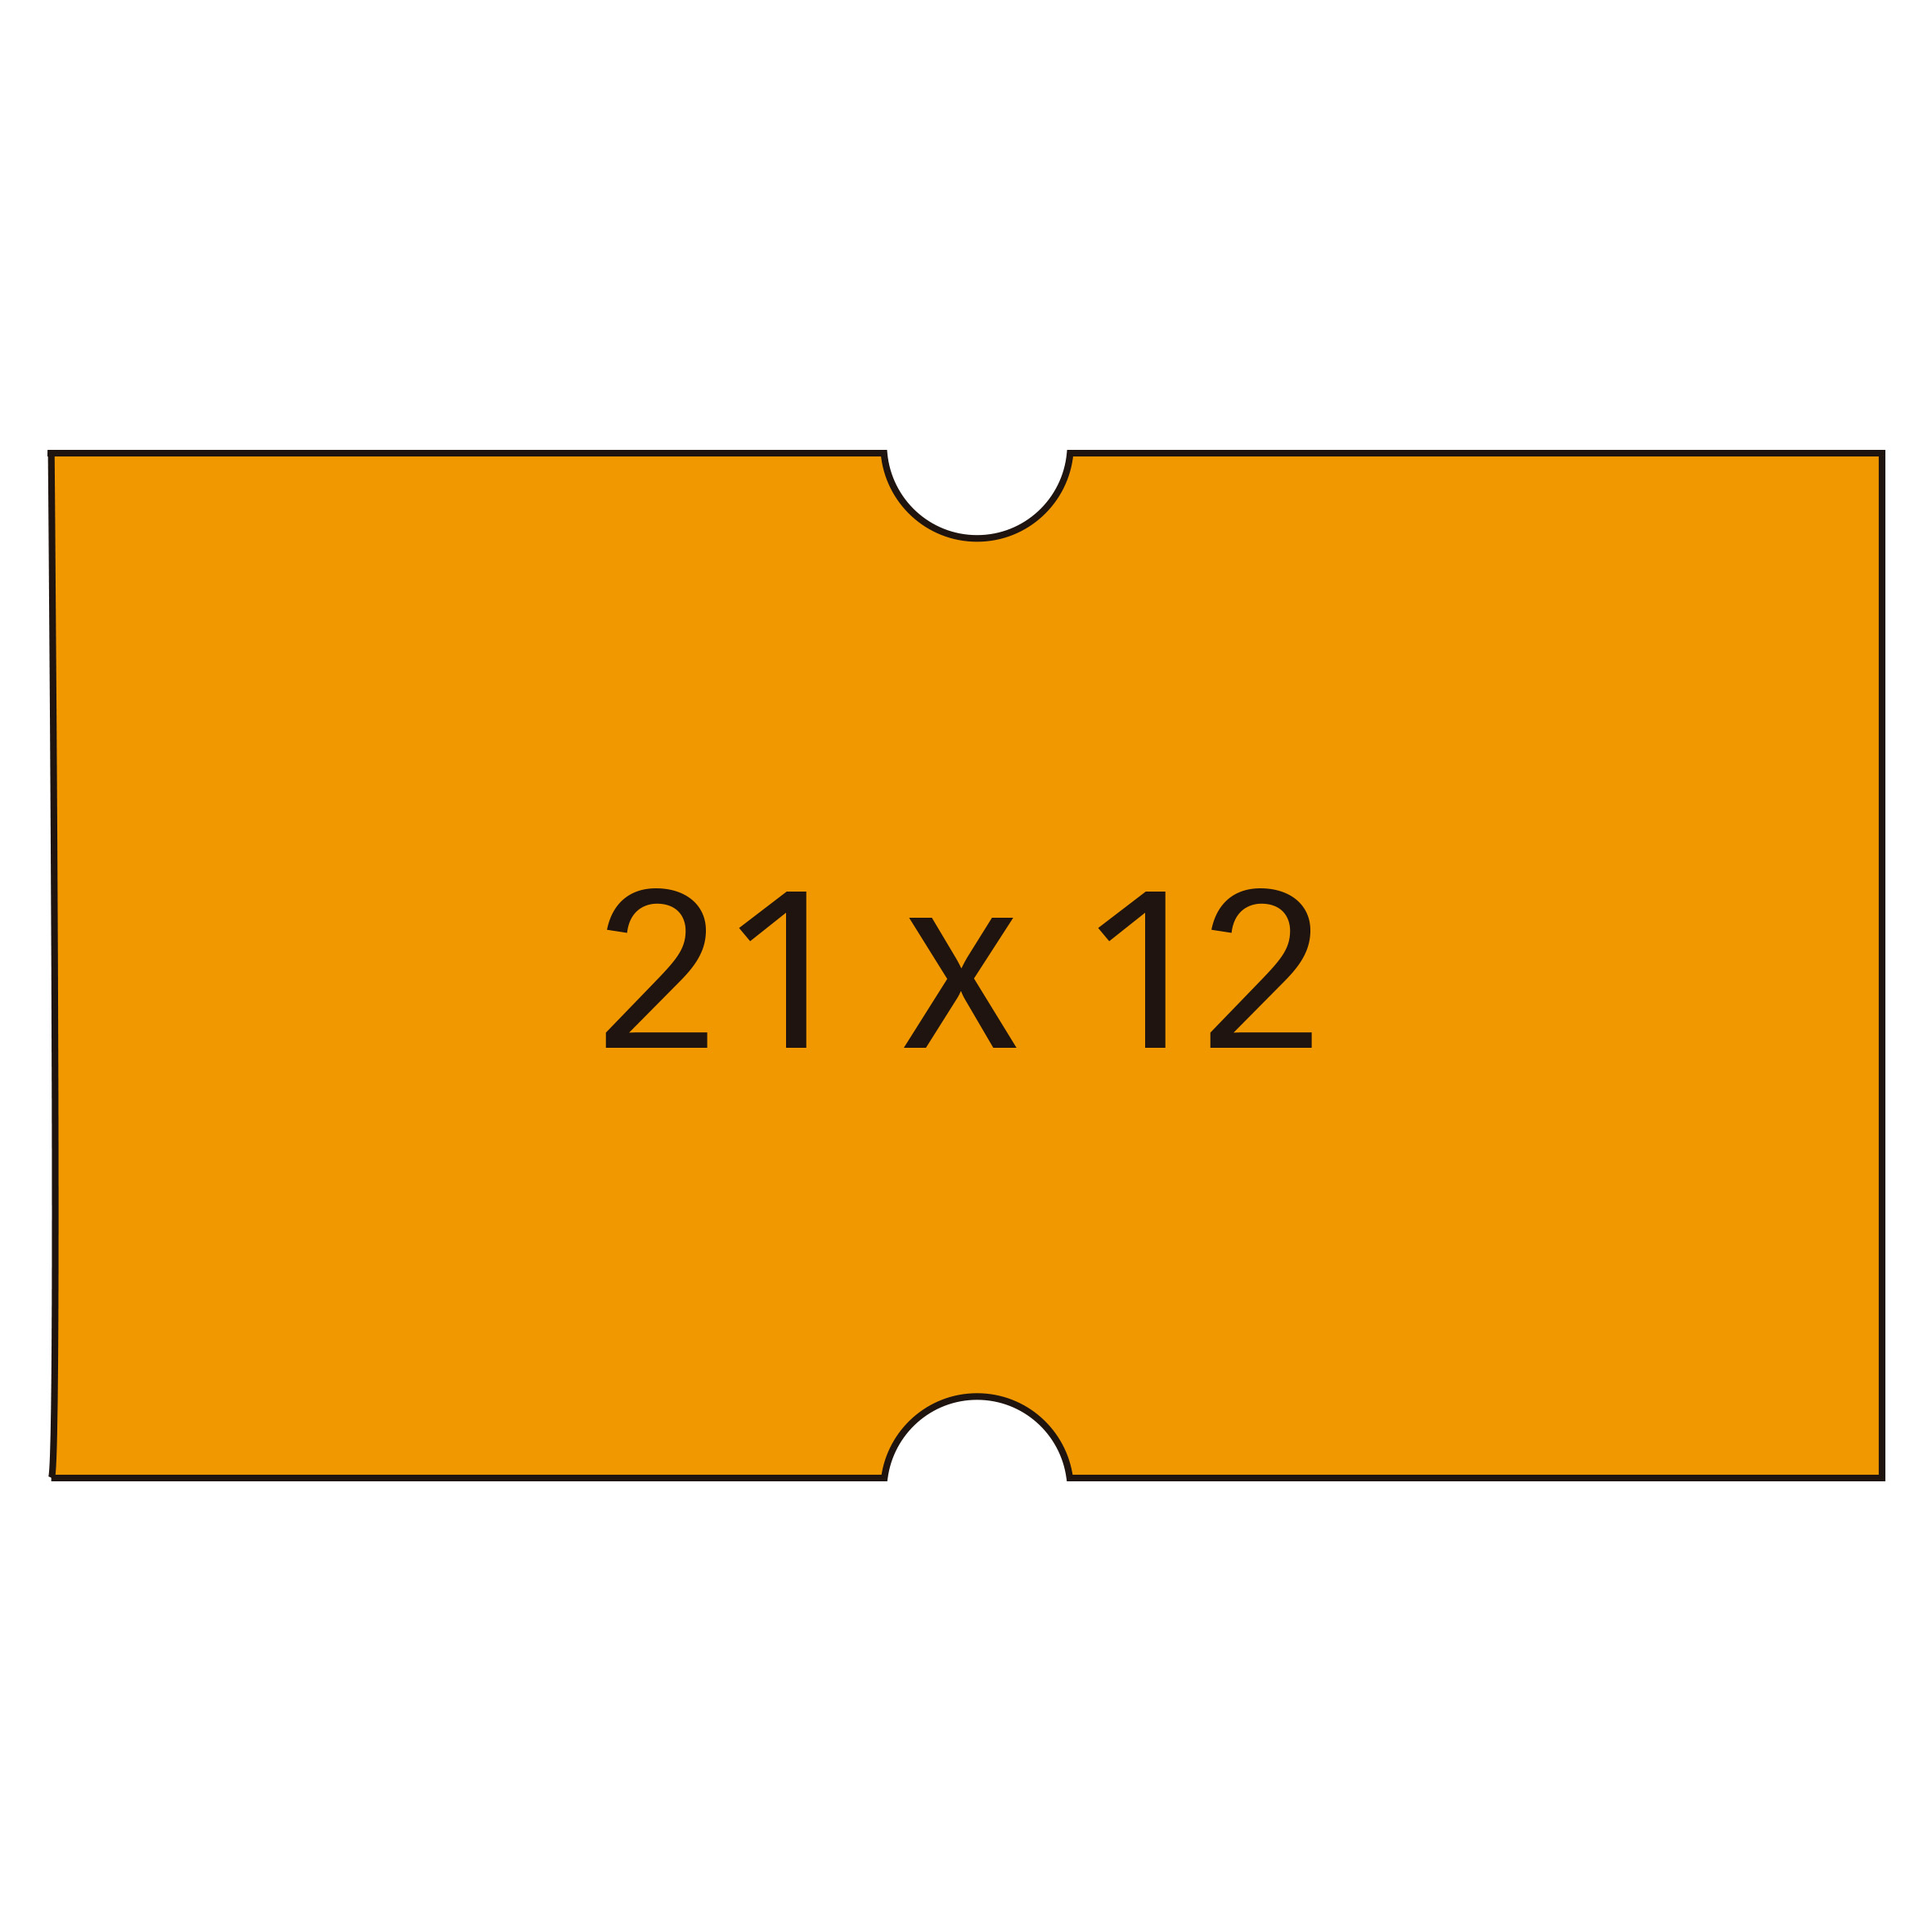 Etiquettes Apli Orange pour Machines à Prix 1 Ligne - Format 21x12mm - Lot de 6 Rouleaux - Adhésif Permanent - Compatible avec les Modèles 101418 et 101948